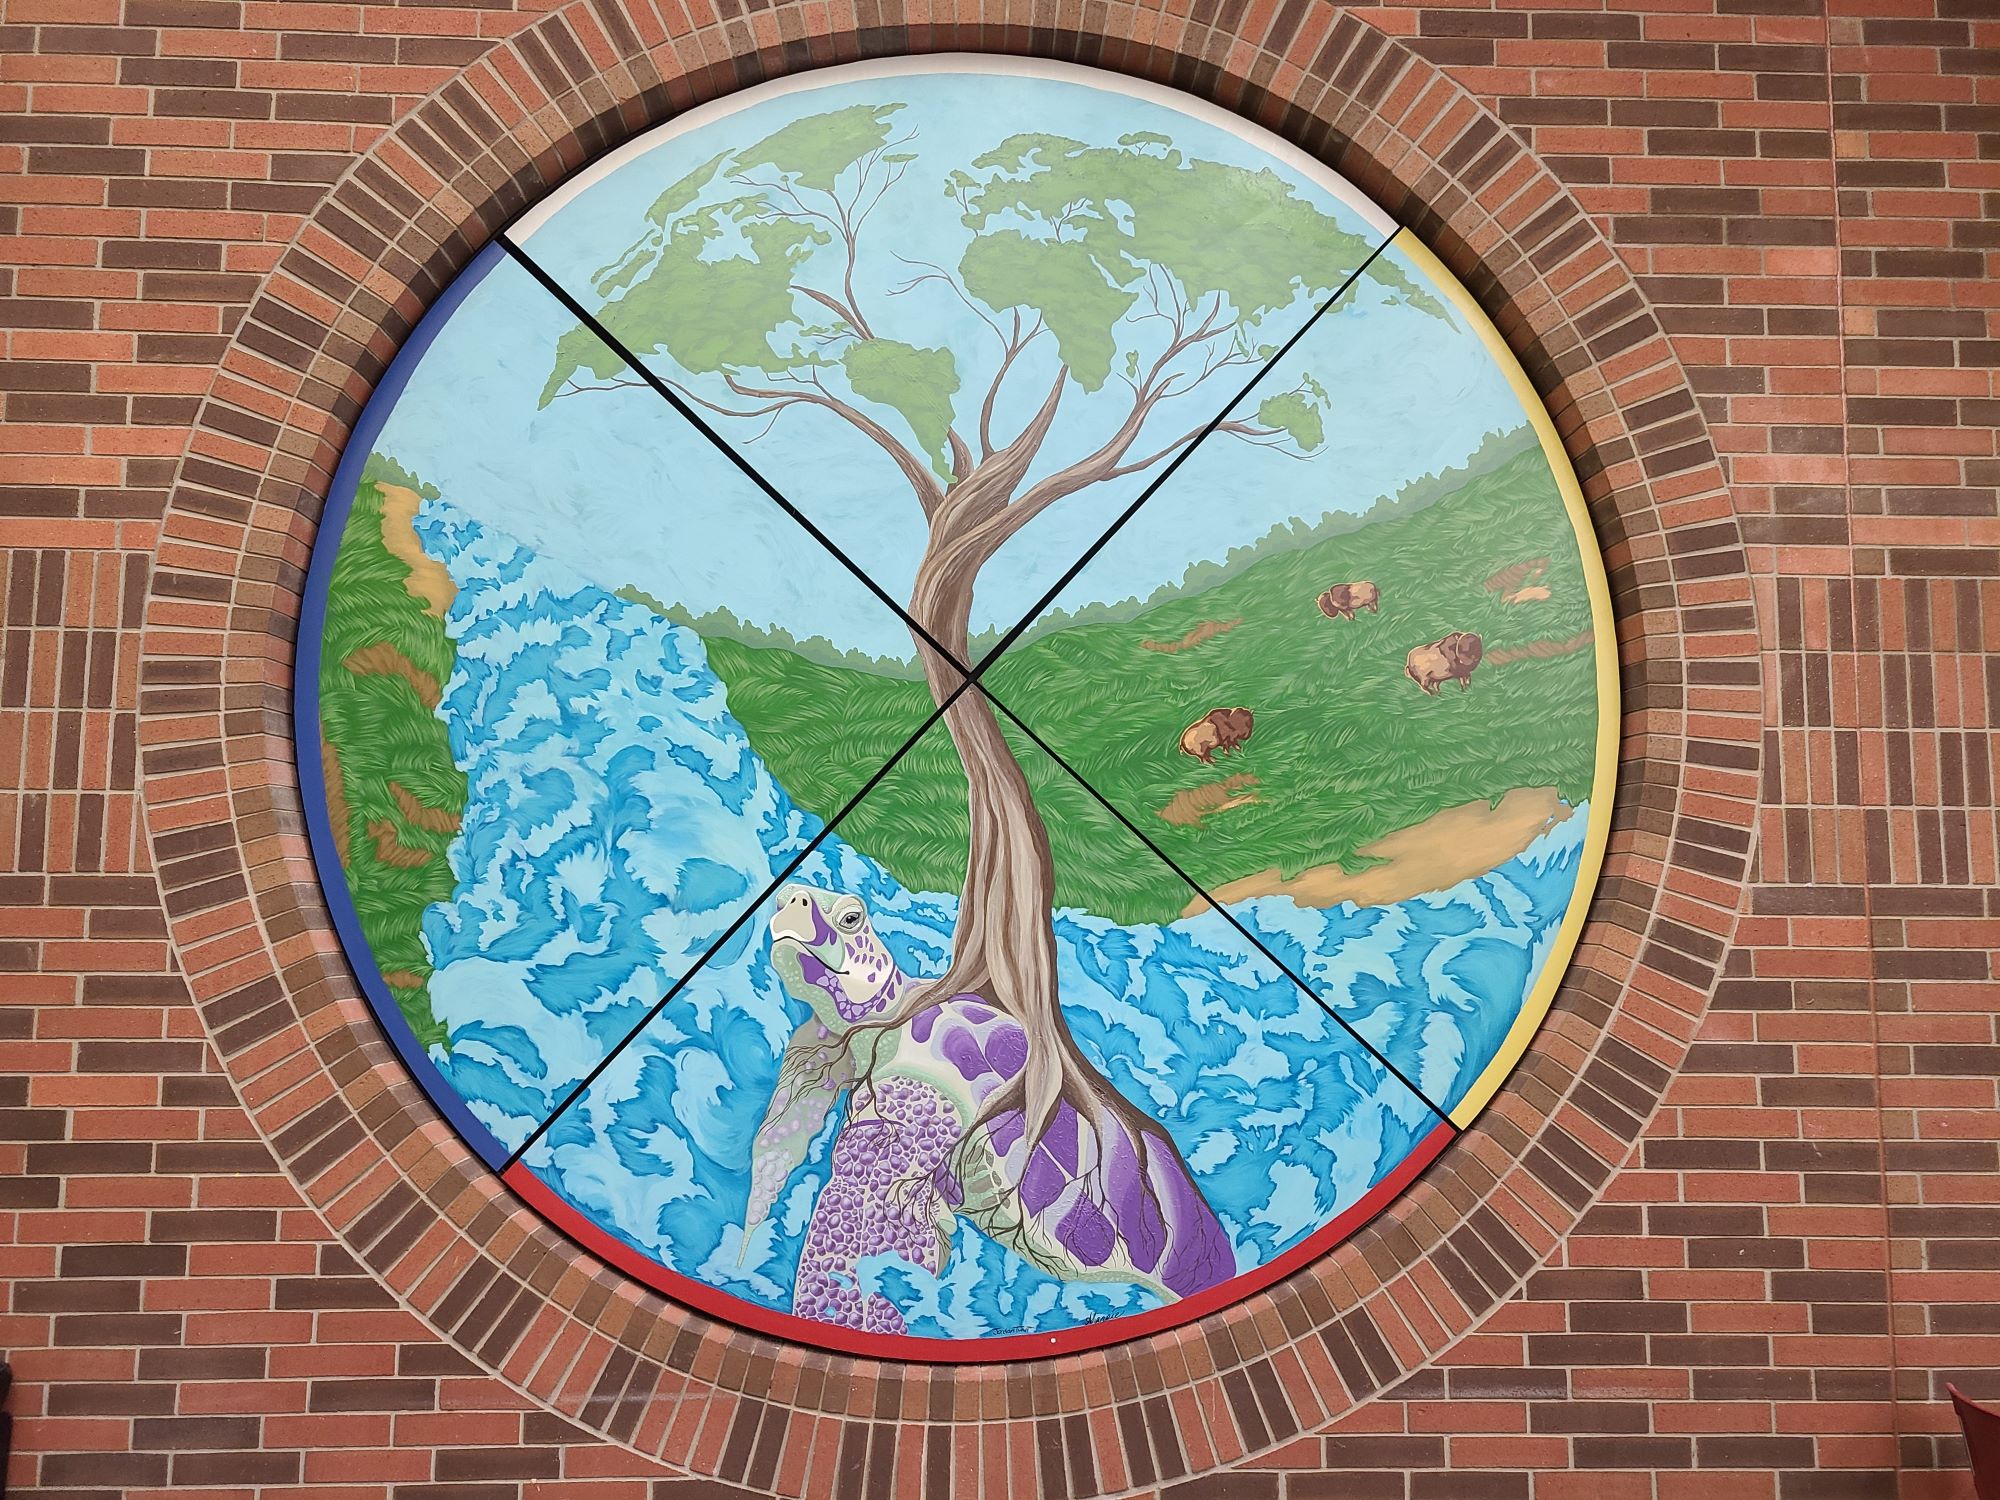 Indigenous mural